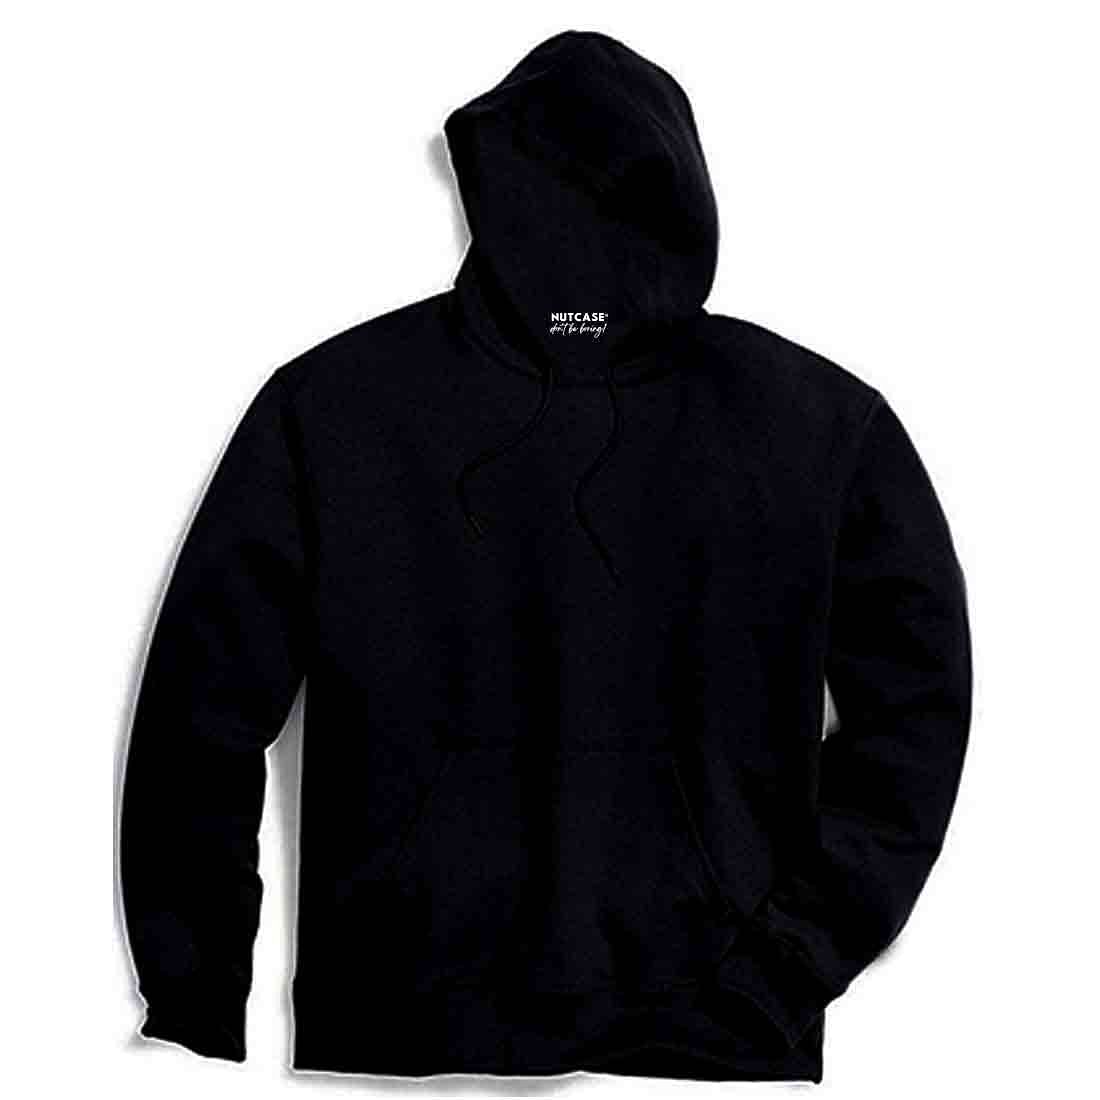 Nutcase Unisex Designer Black Hoodie Men Sweatshirt (Black) - Cross Nutcase